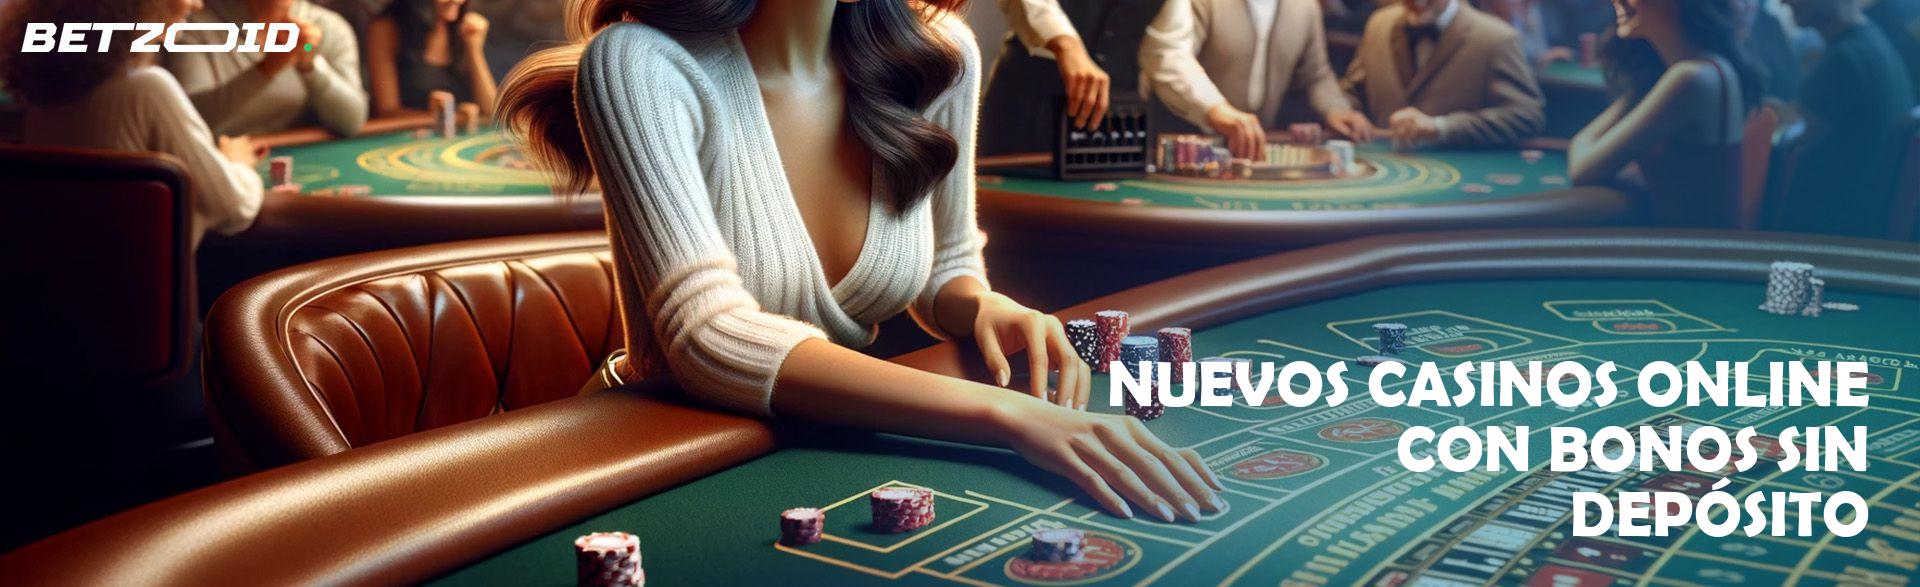 Nuevos casinos sin depósito